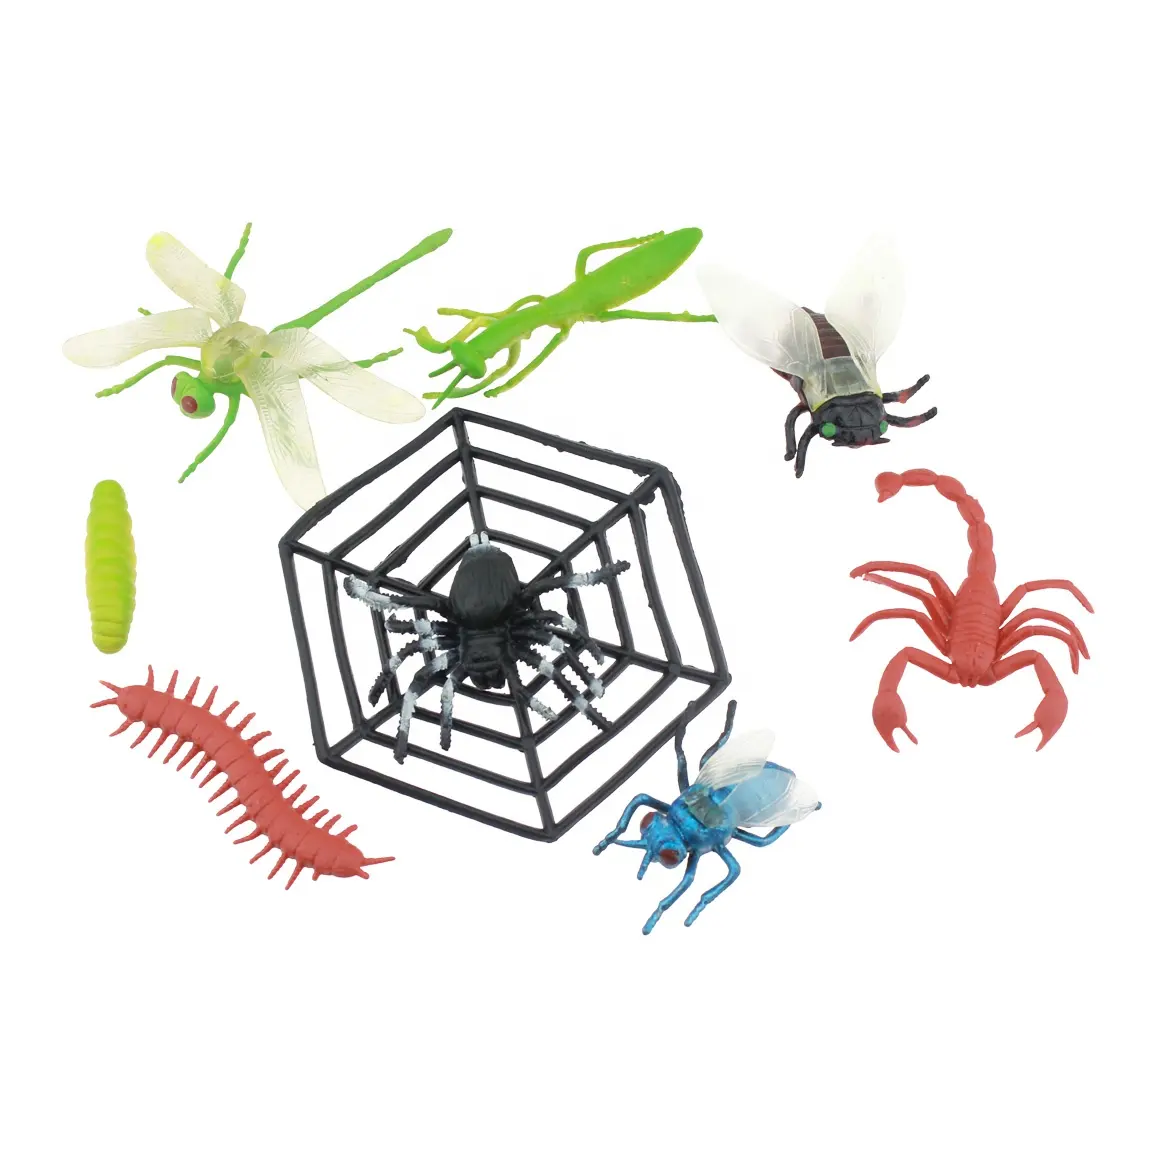 Brinquedo centipede de dragonfly aranha realista, inseto de plástico para crianças, preço baixo